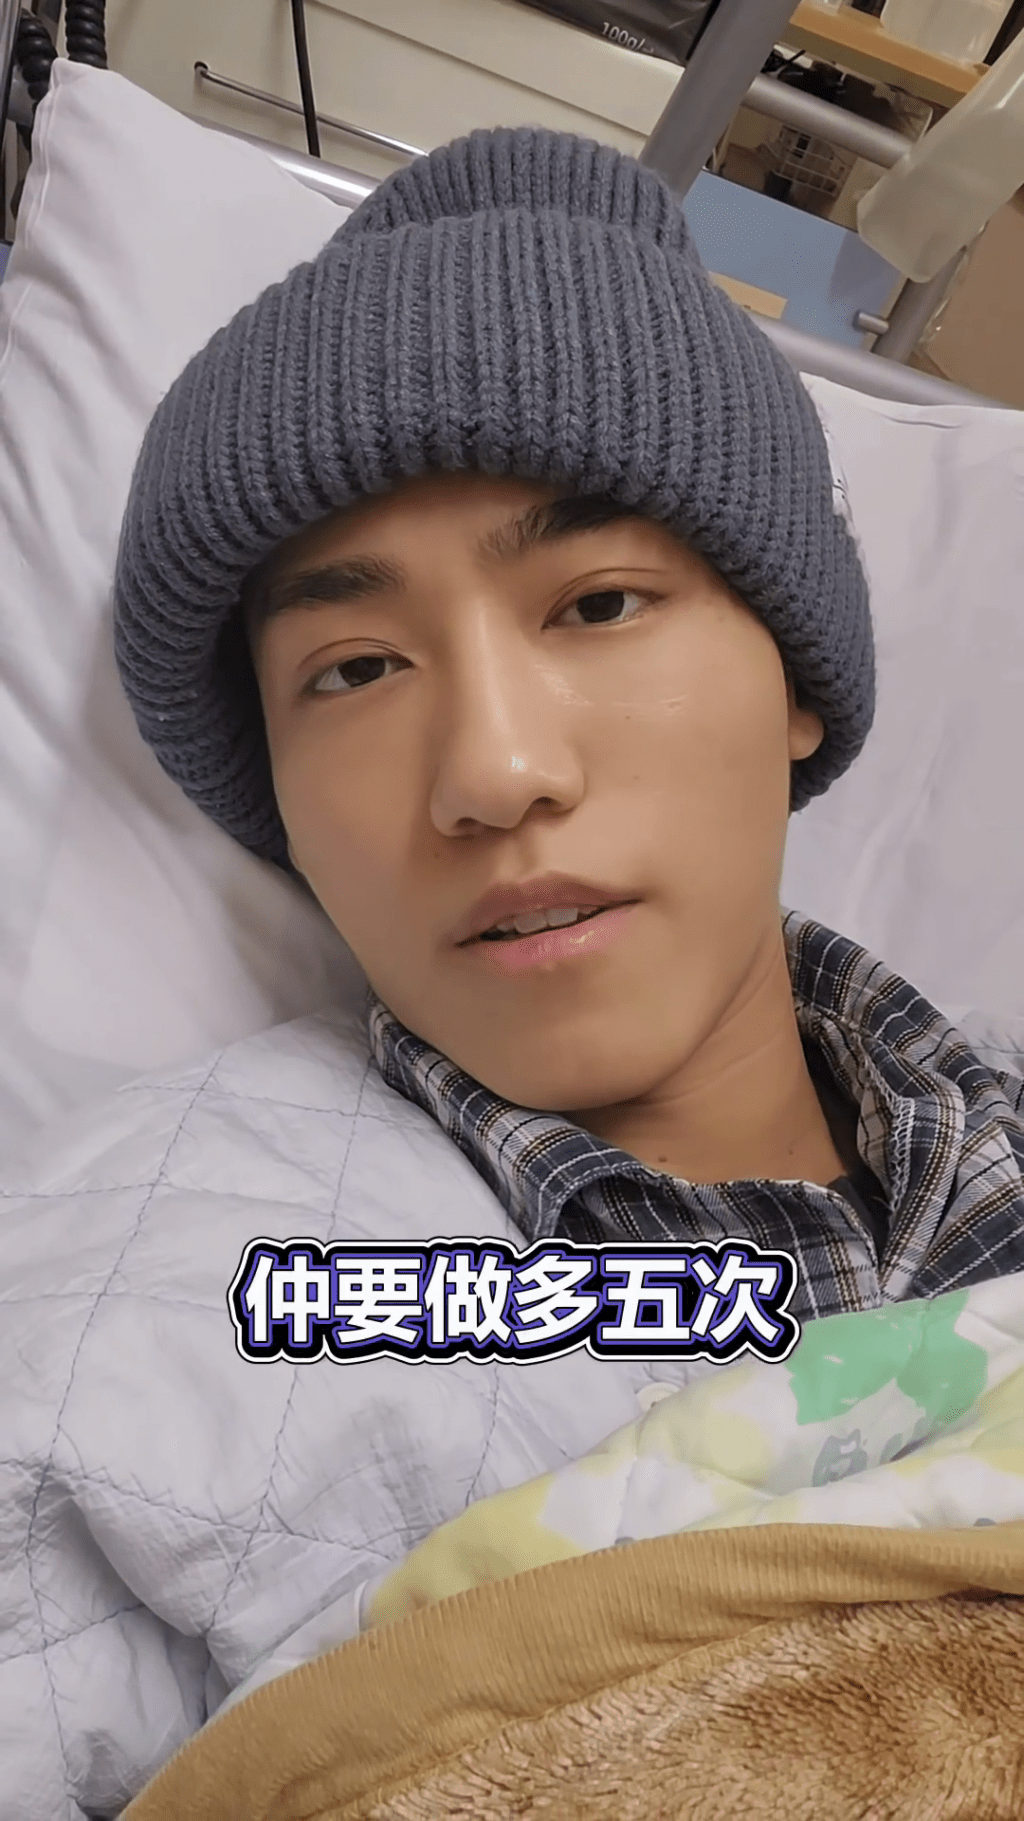 文颂男透露仍需入院5次进行化疗。